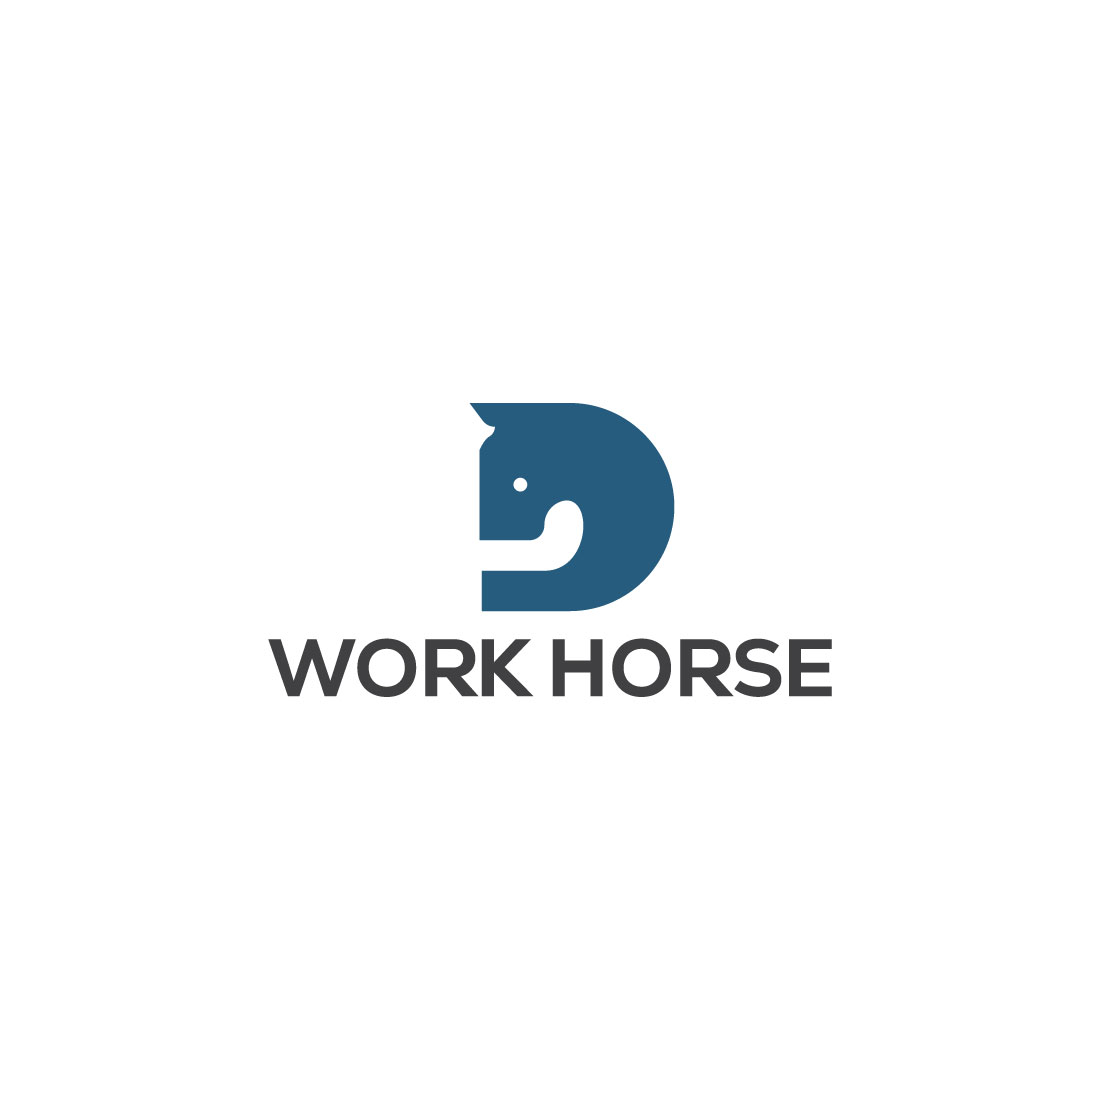 Horse logo design preview image.